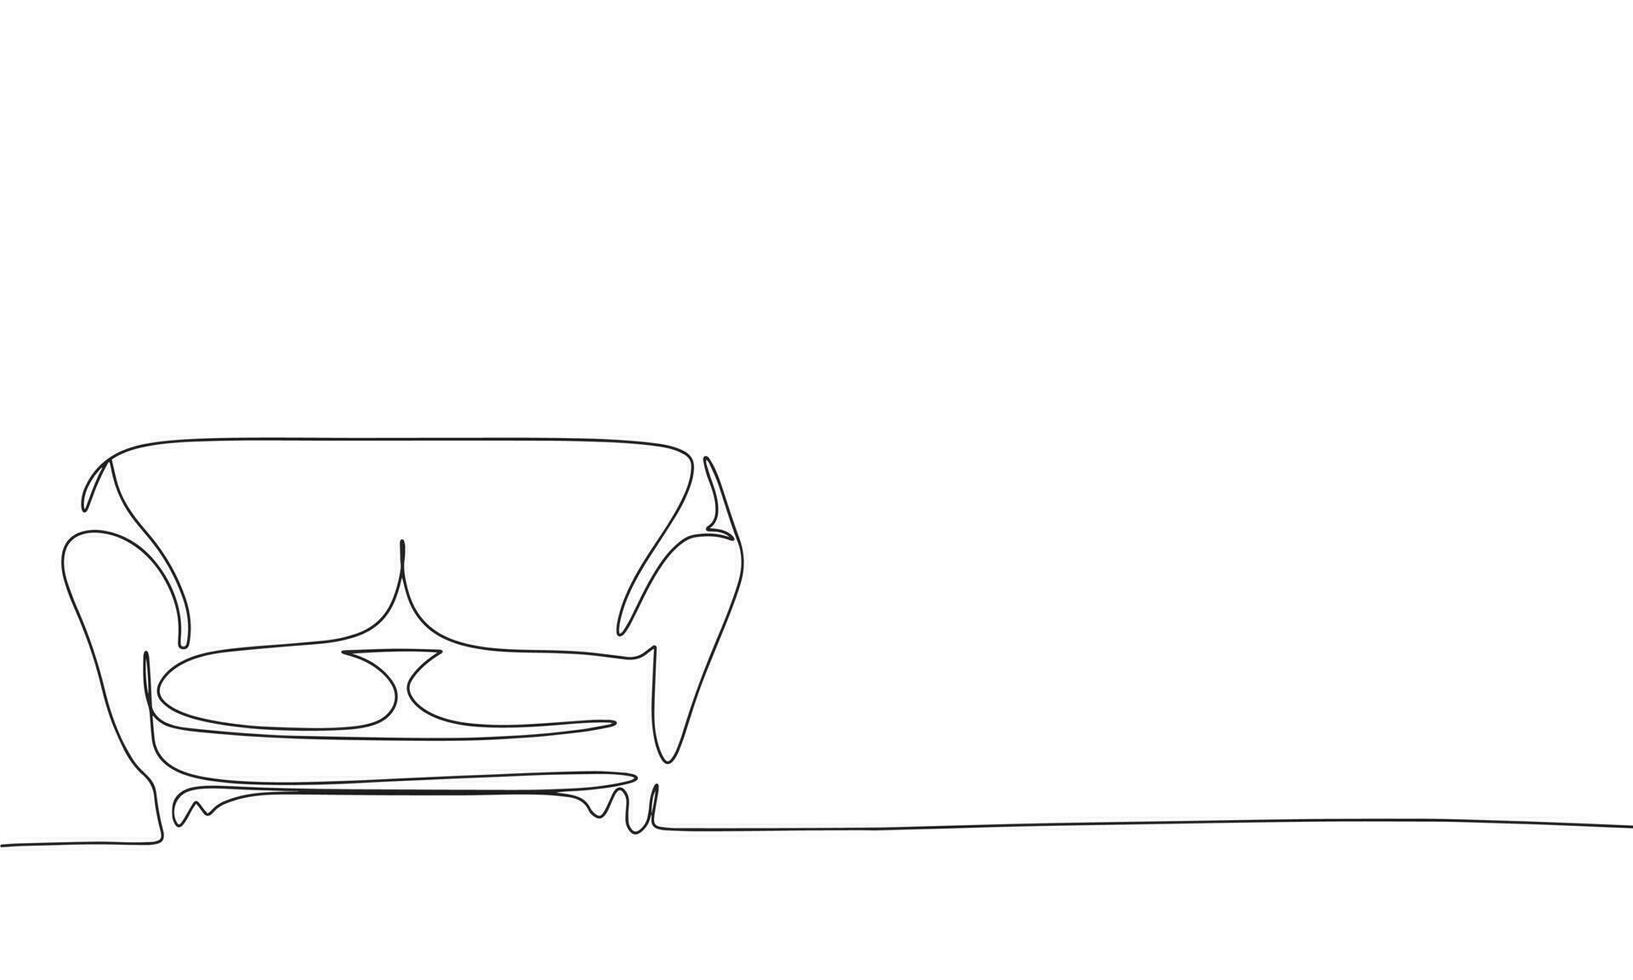 gemütlich modern Sofa. einer Linie kontinuierlich Möbel. Linie Kunst, Umriss, Single Linie Silhouette. Hand gezeichnet Vektor Illustration.